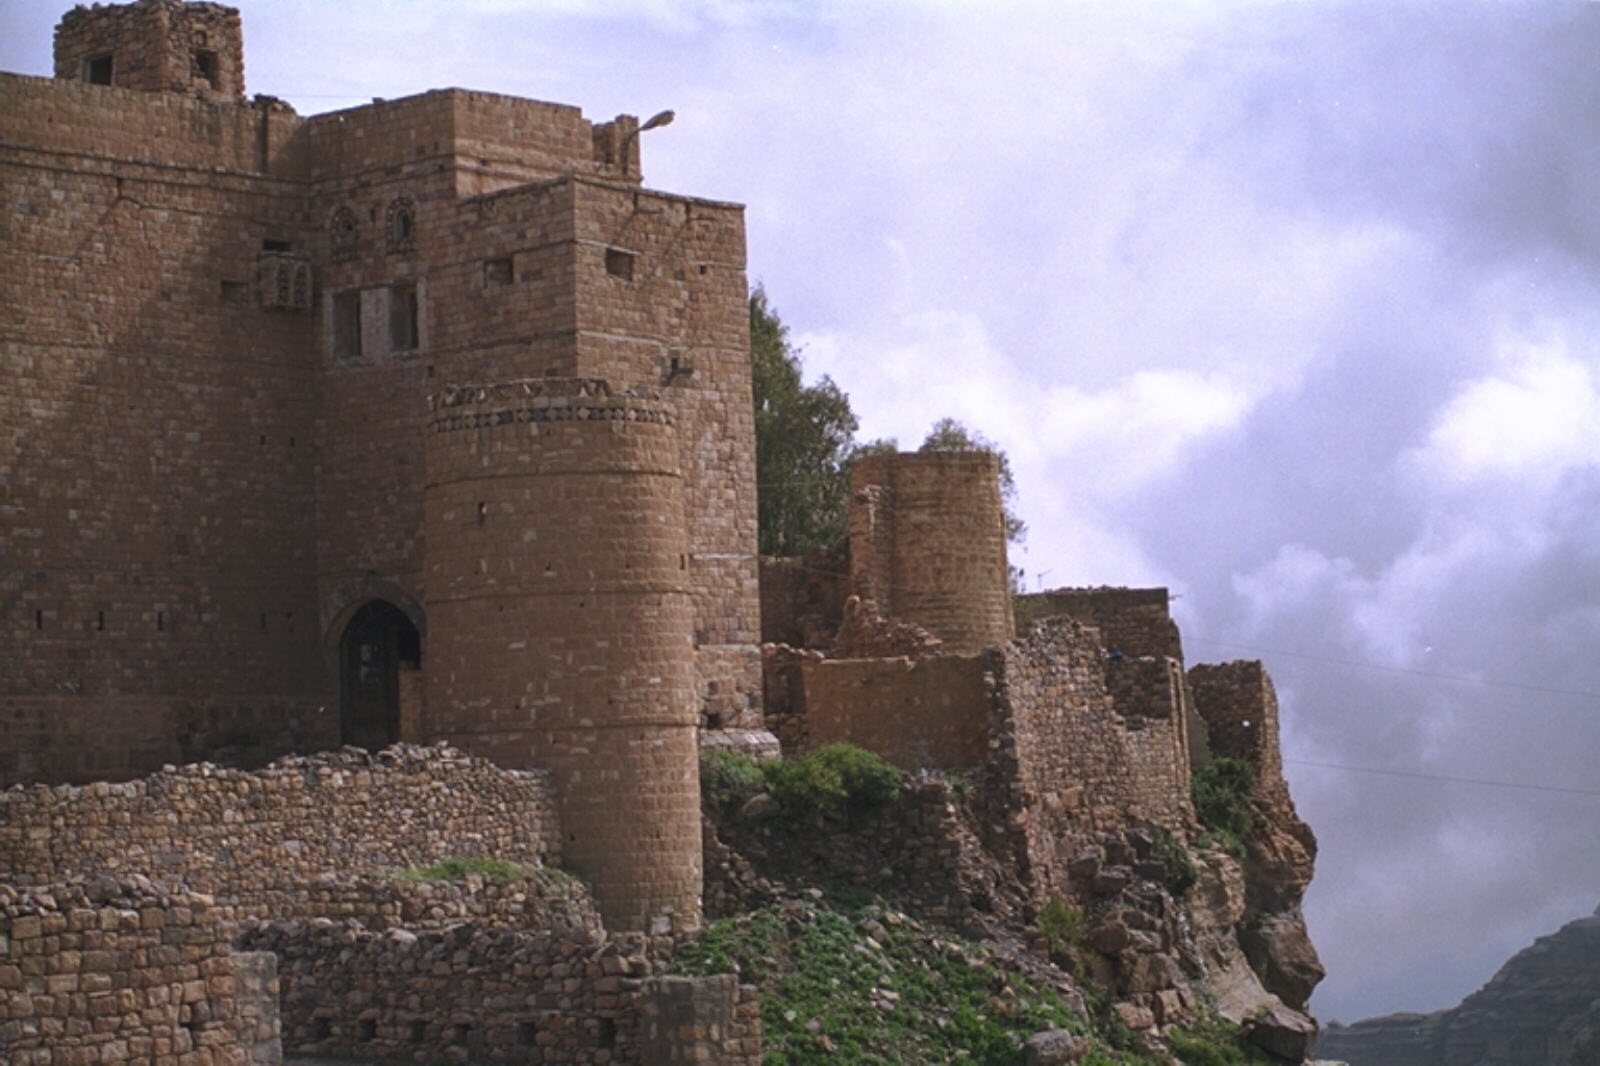 A gateway in Kawkaban village near Sanaa, Yemen